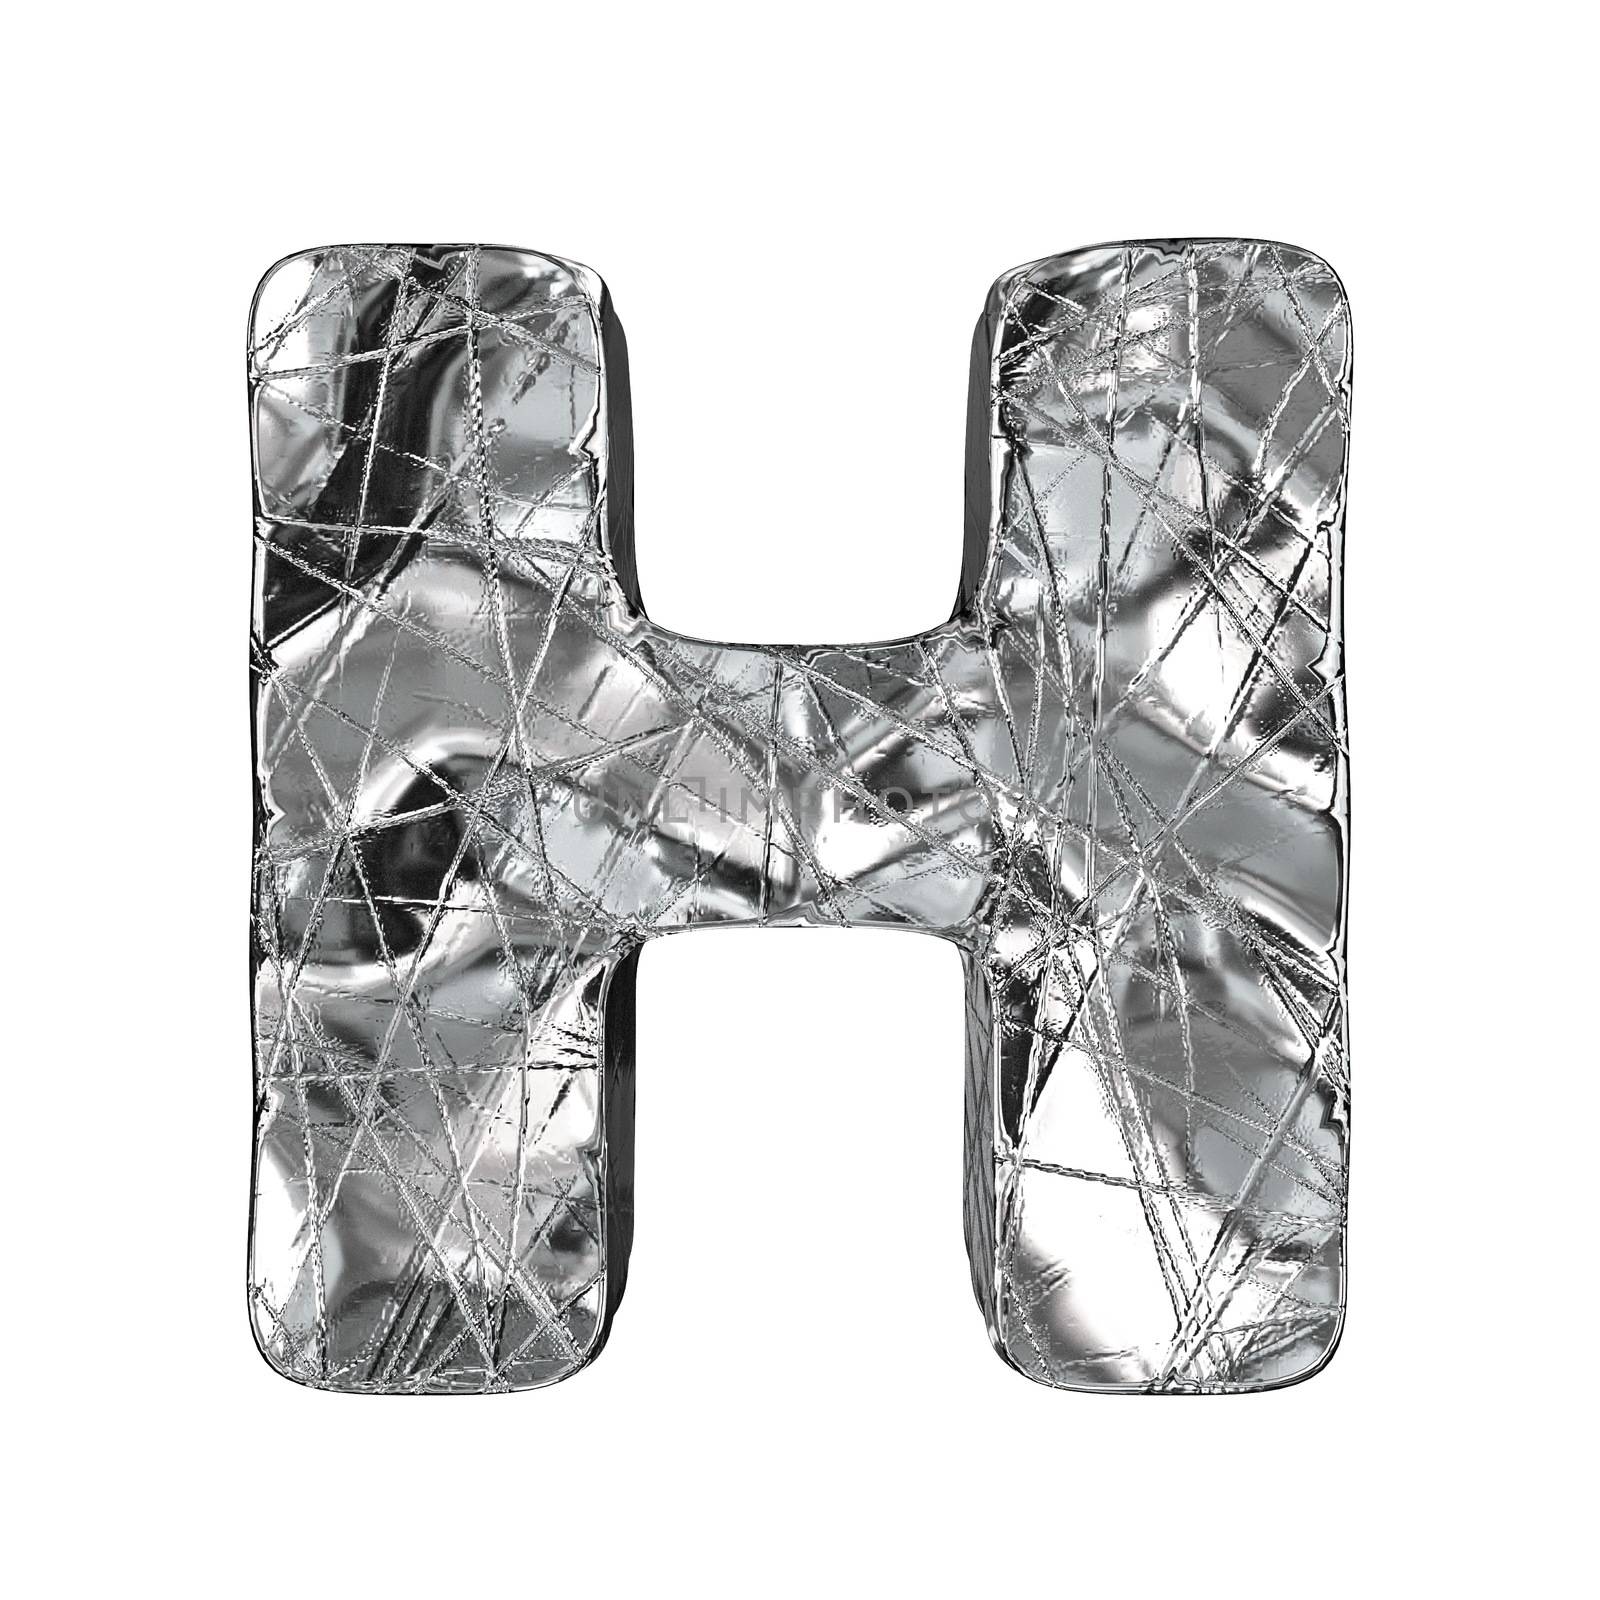 Grunge aluminium foil font letter H 3D by djmilic